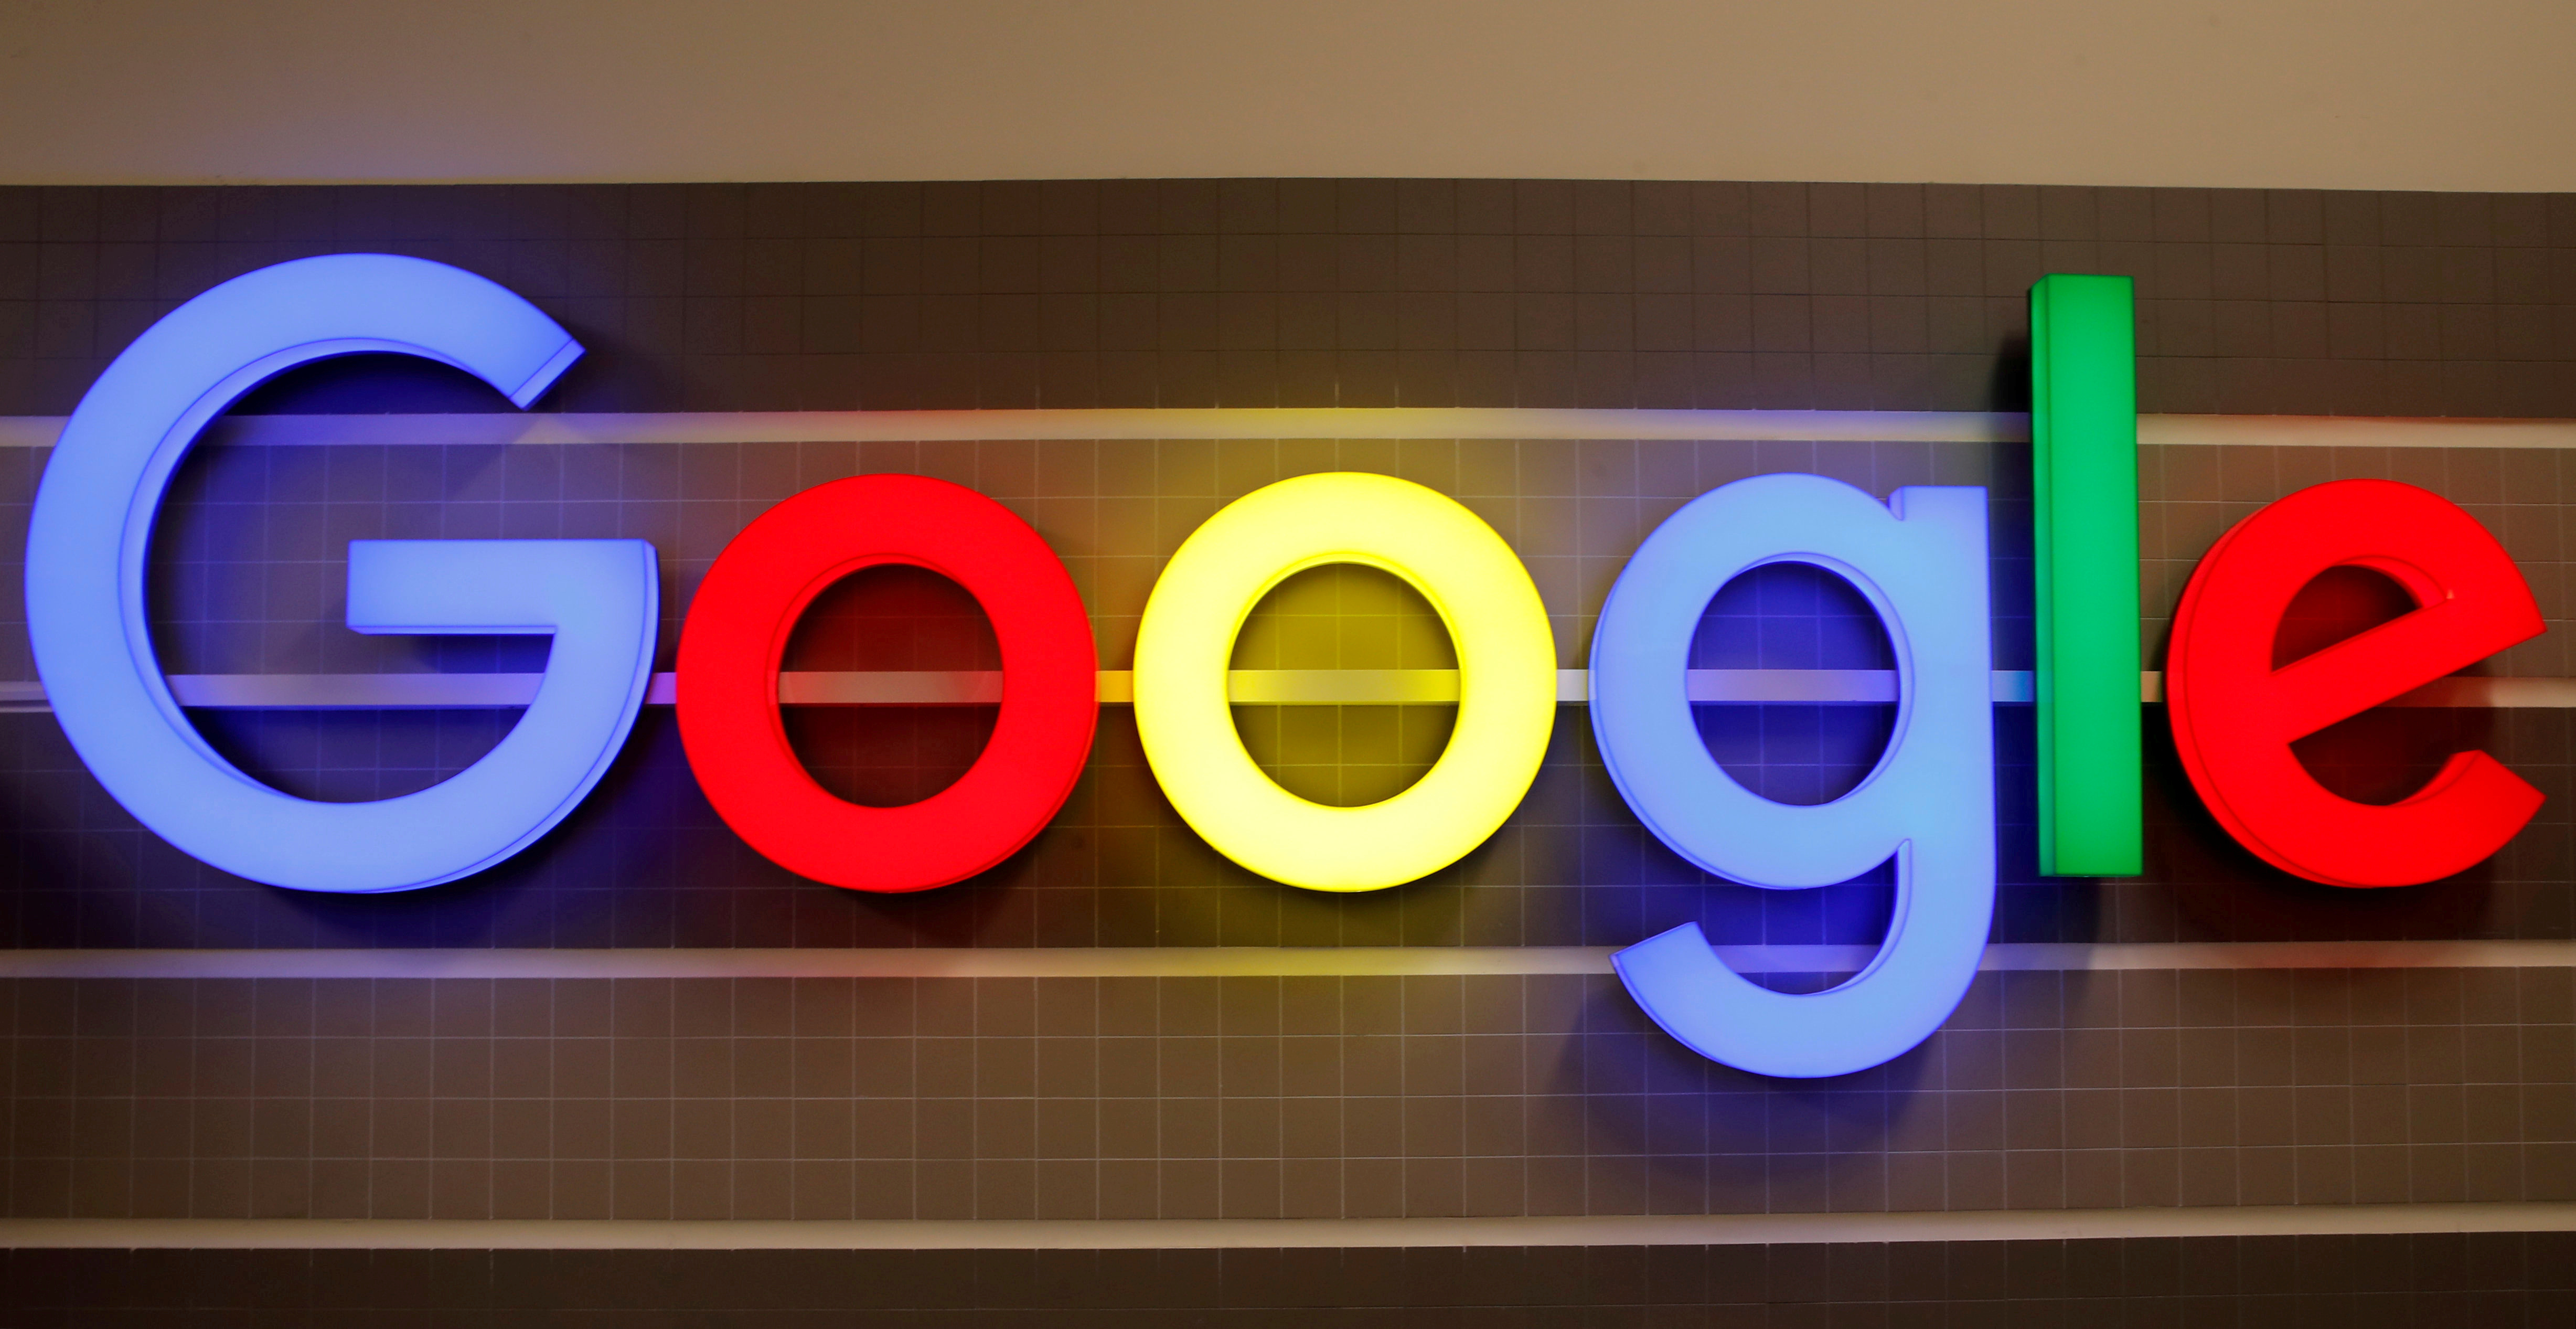 Pratiques anticoncurrentielles : l'amende de 2,4 milliards d'euros infligée à Google confirmée